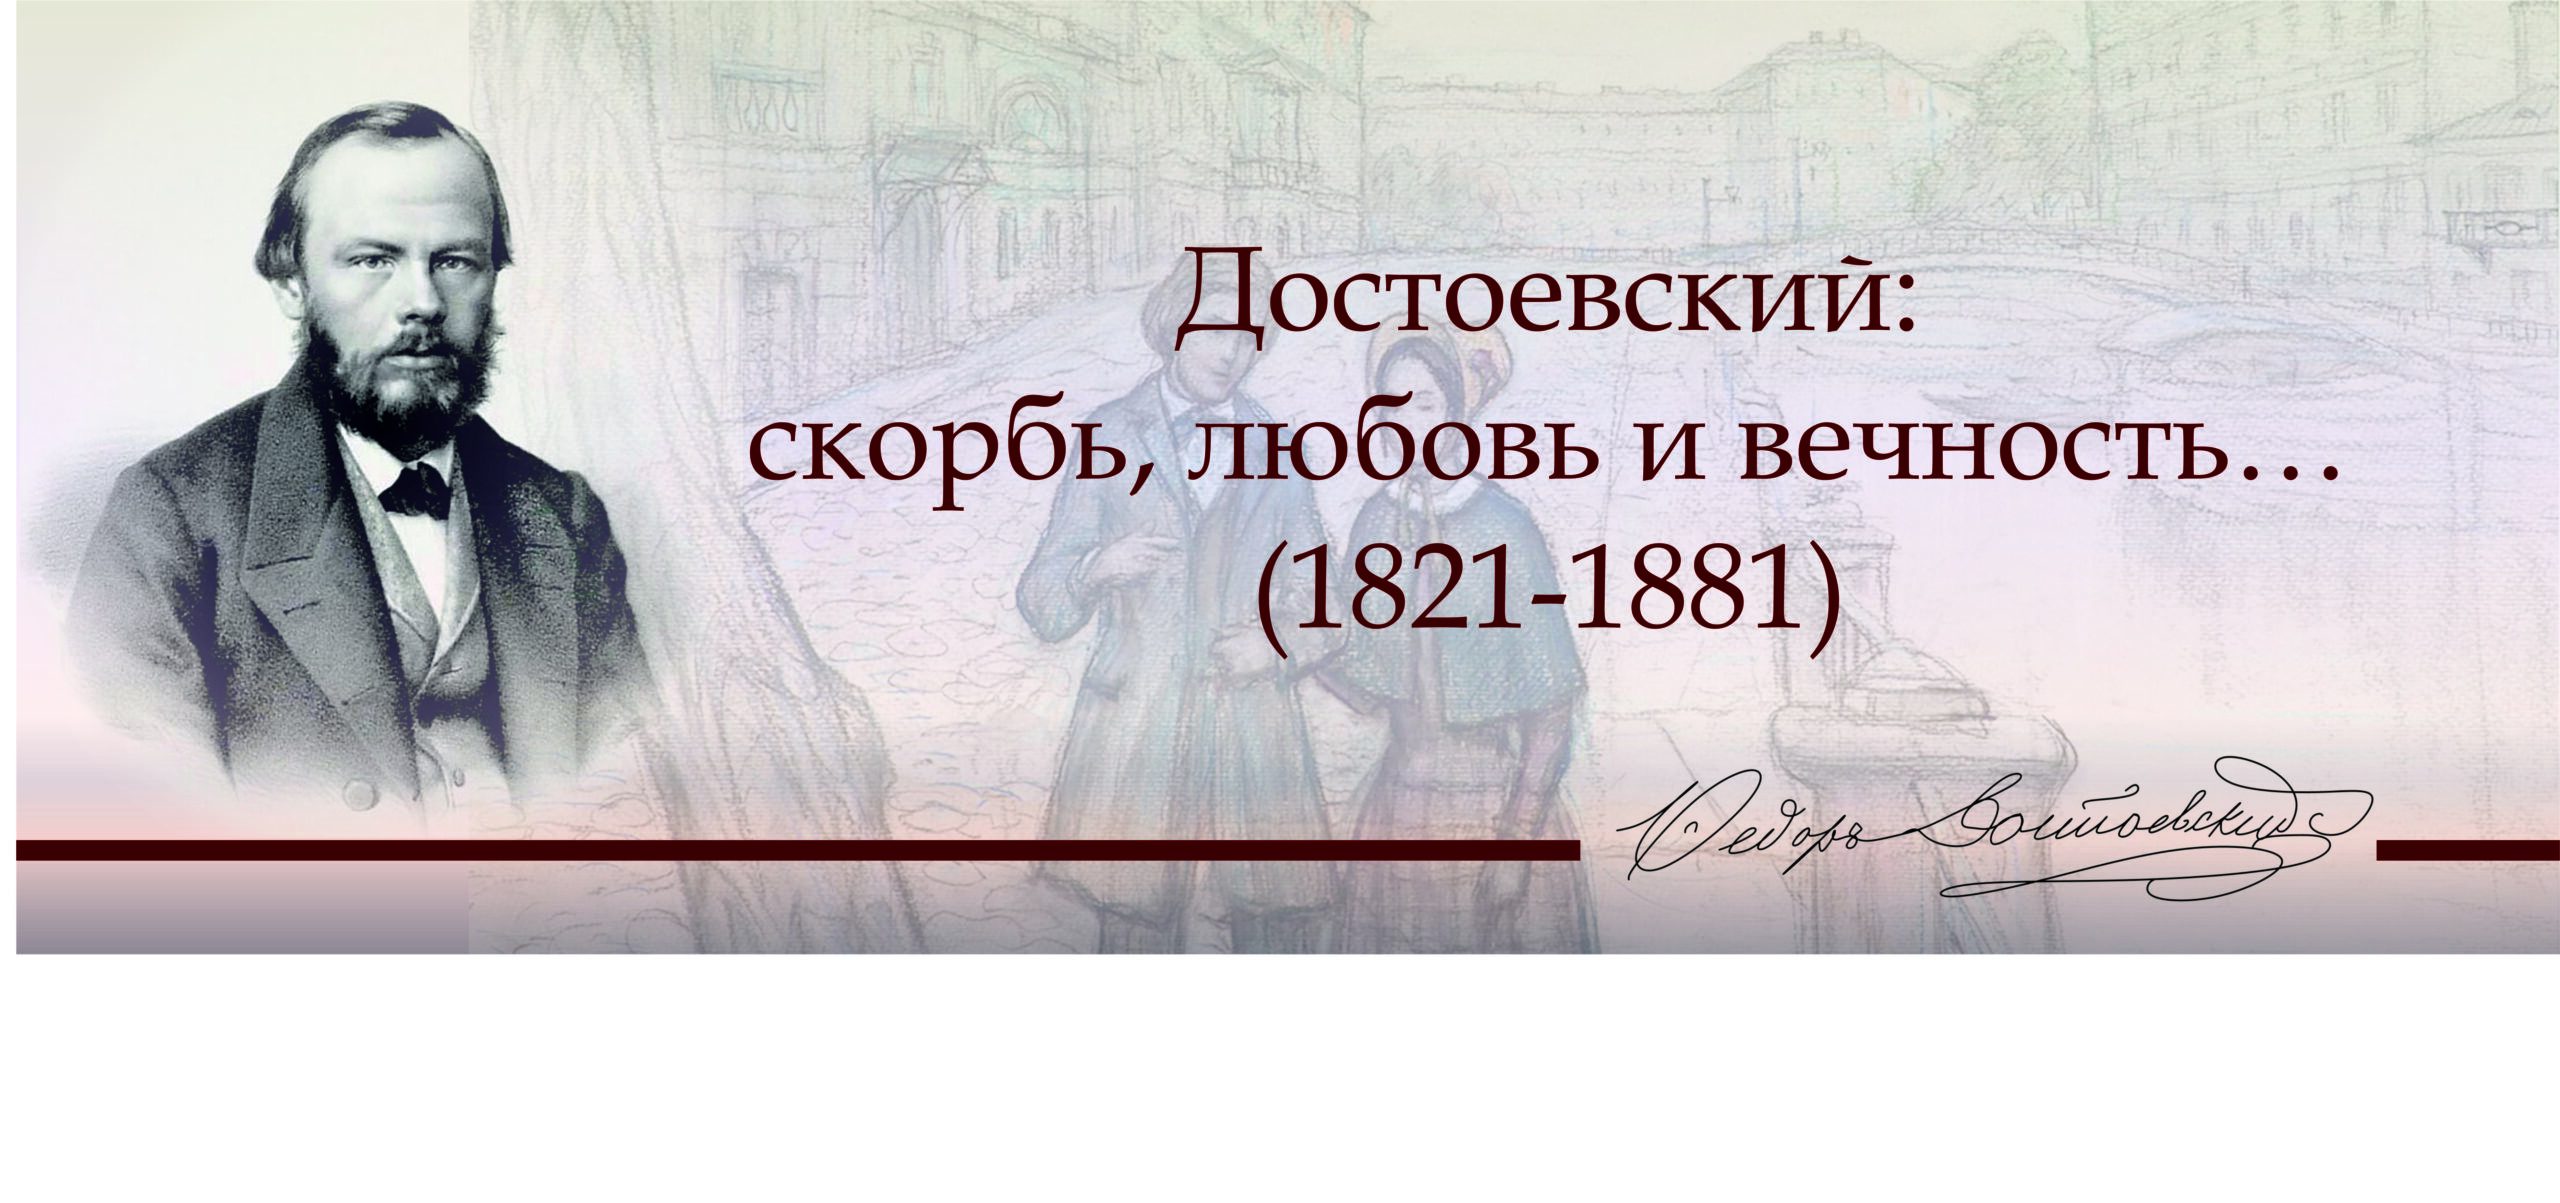 Достоевский мыслитель 200 лет